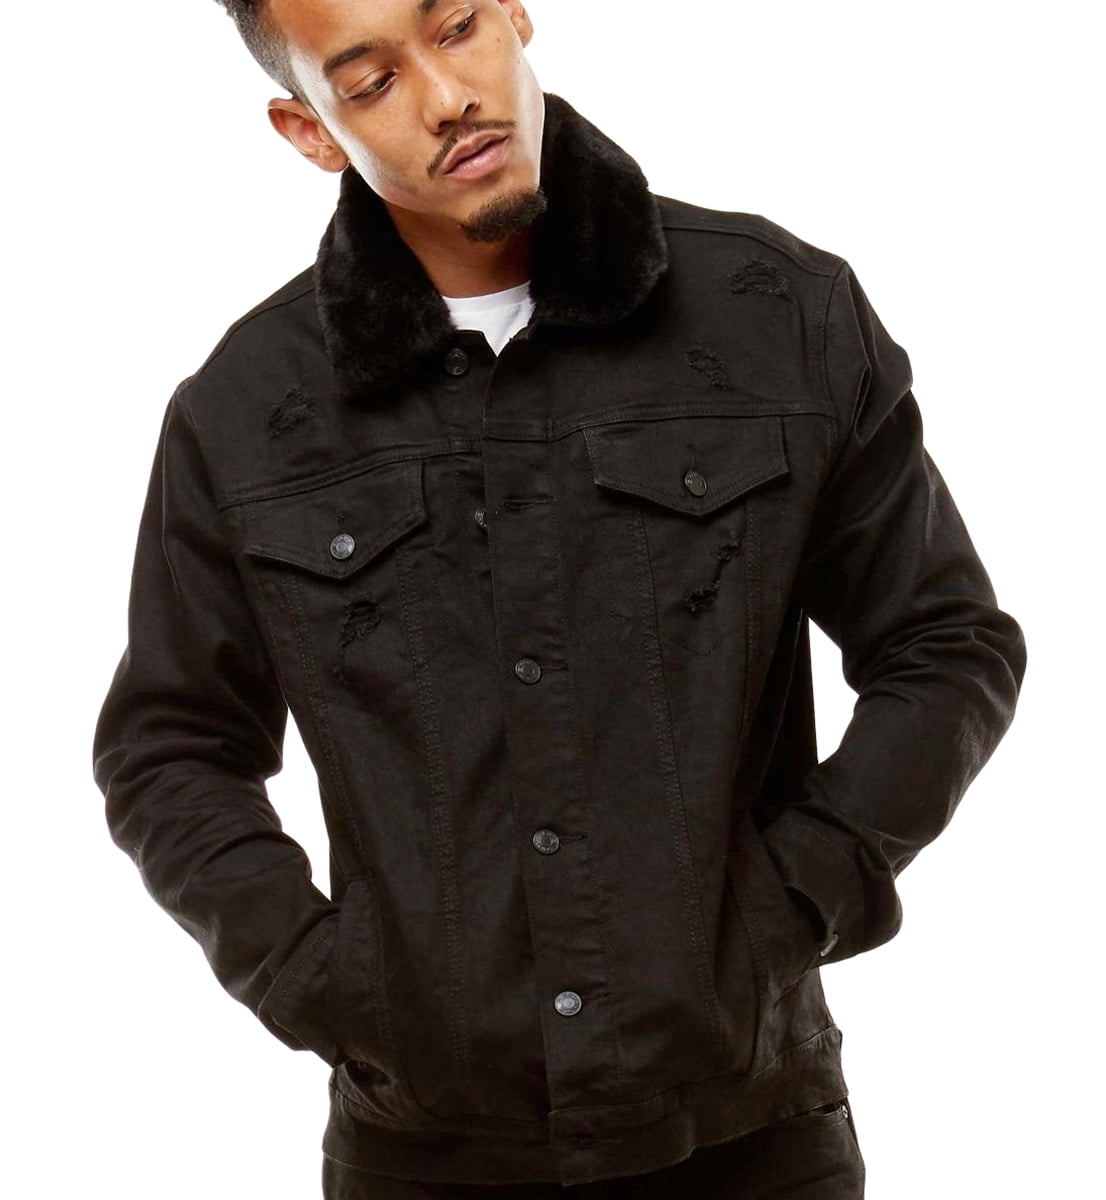 Smoke Rise Men's Denim Jacket With Detachable Faux Fur Collar - Walmart ...